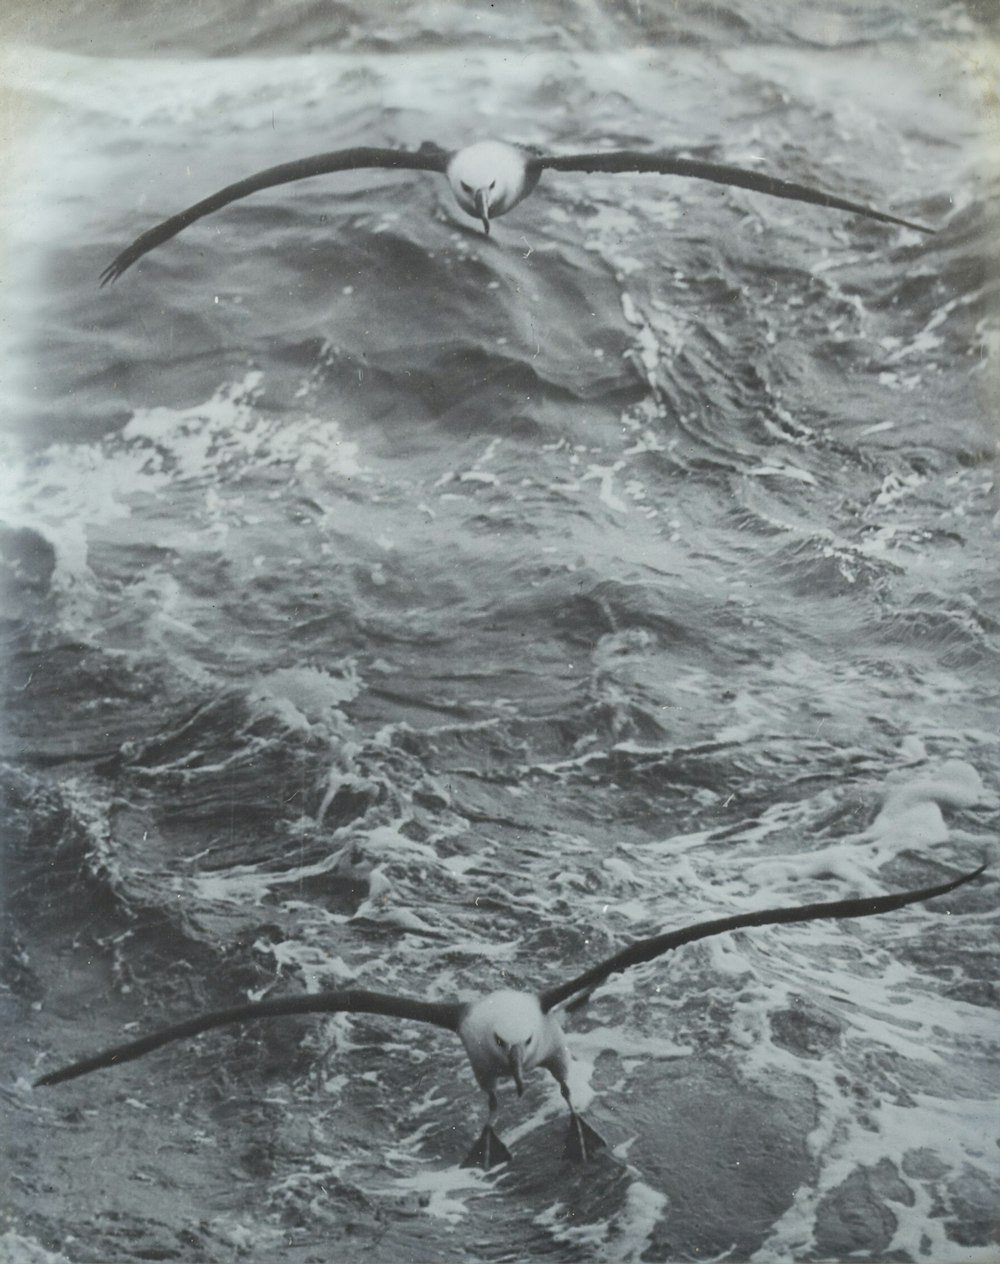 물 위를 날고 있는 새의 회색조 사진